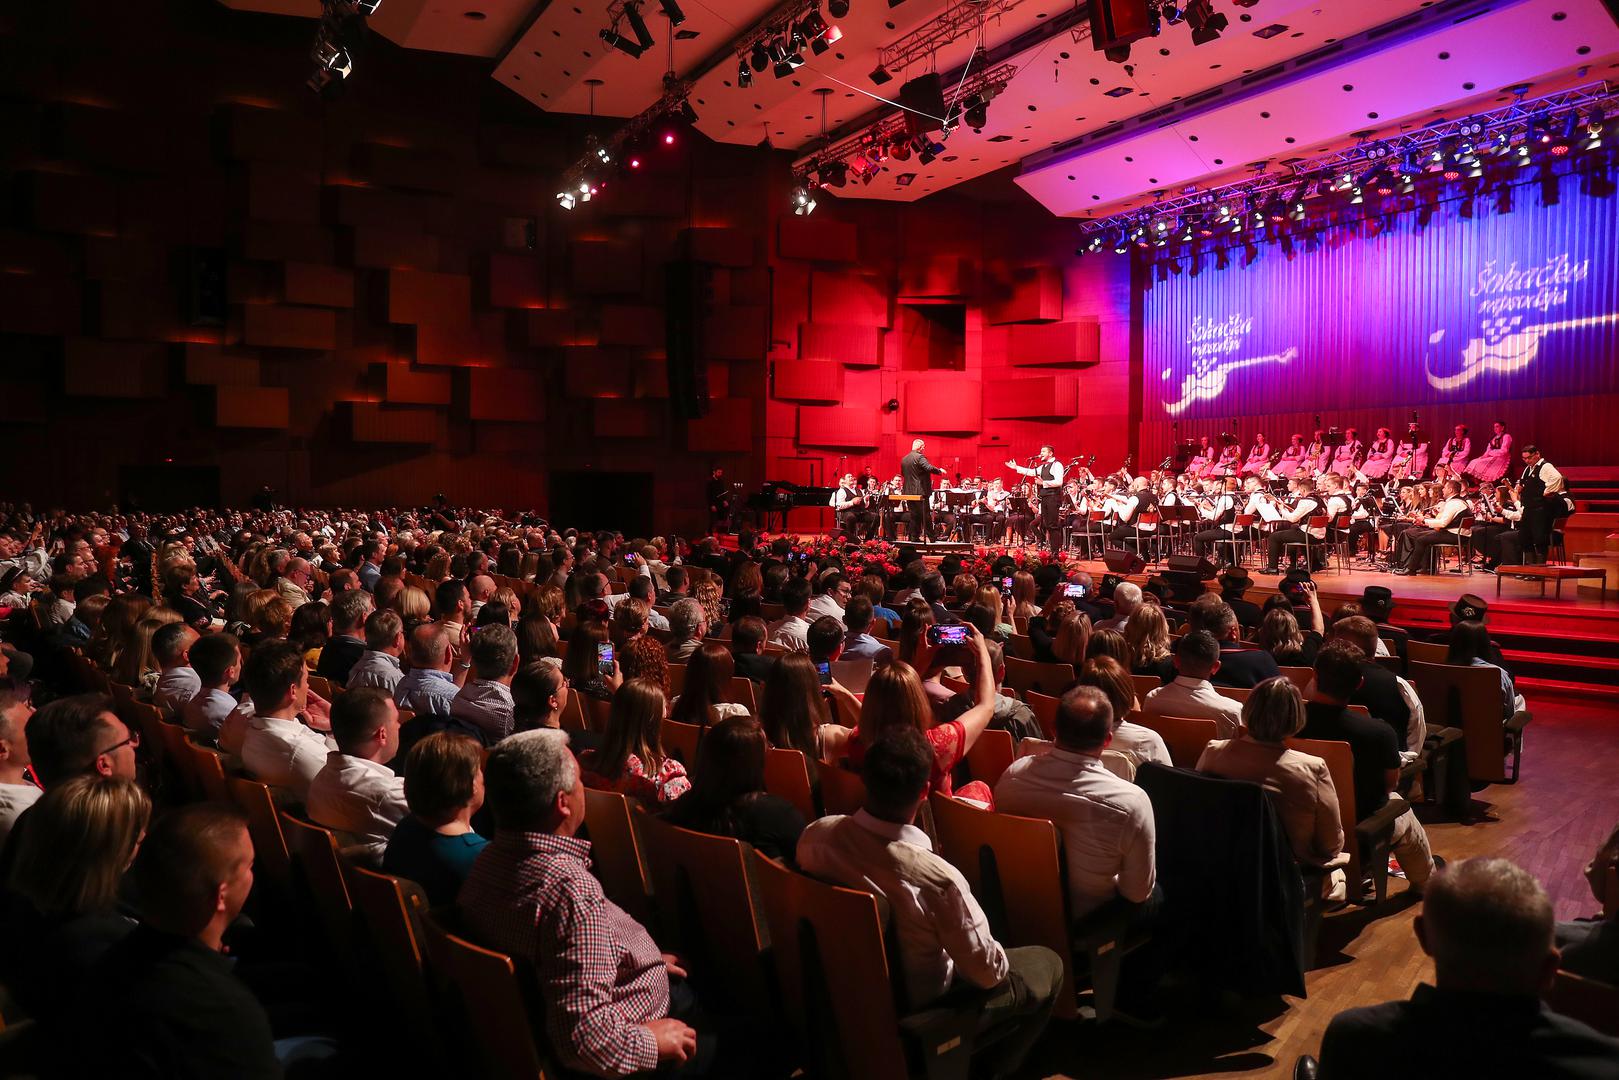 Spektakl Šokačka rapsodija u Lisinskom iz godine u godinu dokazuje da tamburaška glazba ima snažnu i vjernu publiku te da može ispuniti i najprestižnije koncertne dvorane.